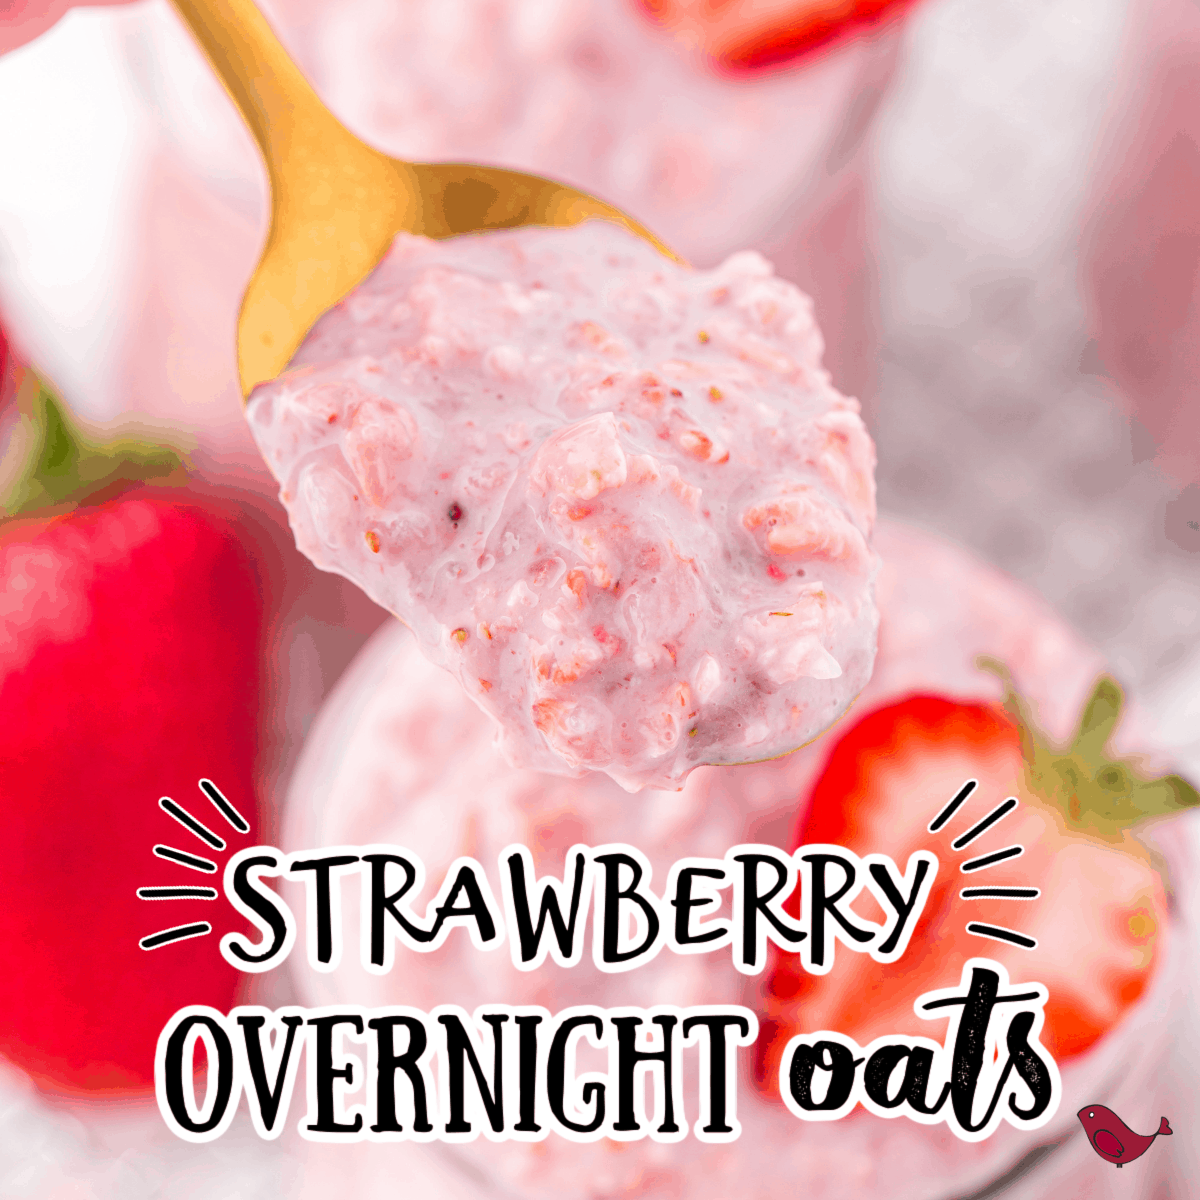 Strawberry Banana Overnight Oats - Hey Nutrition Lady